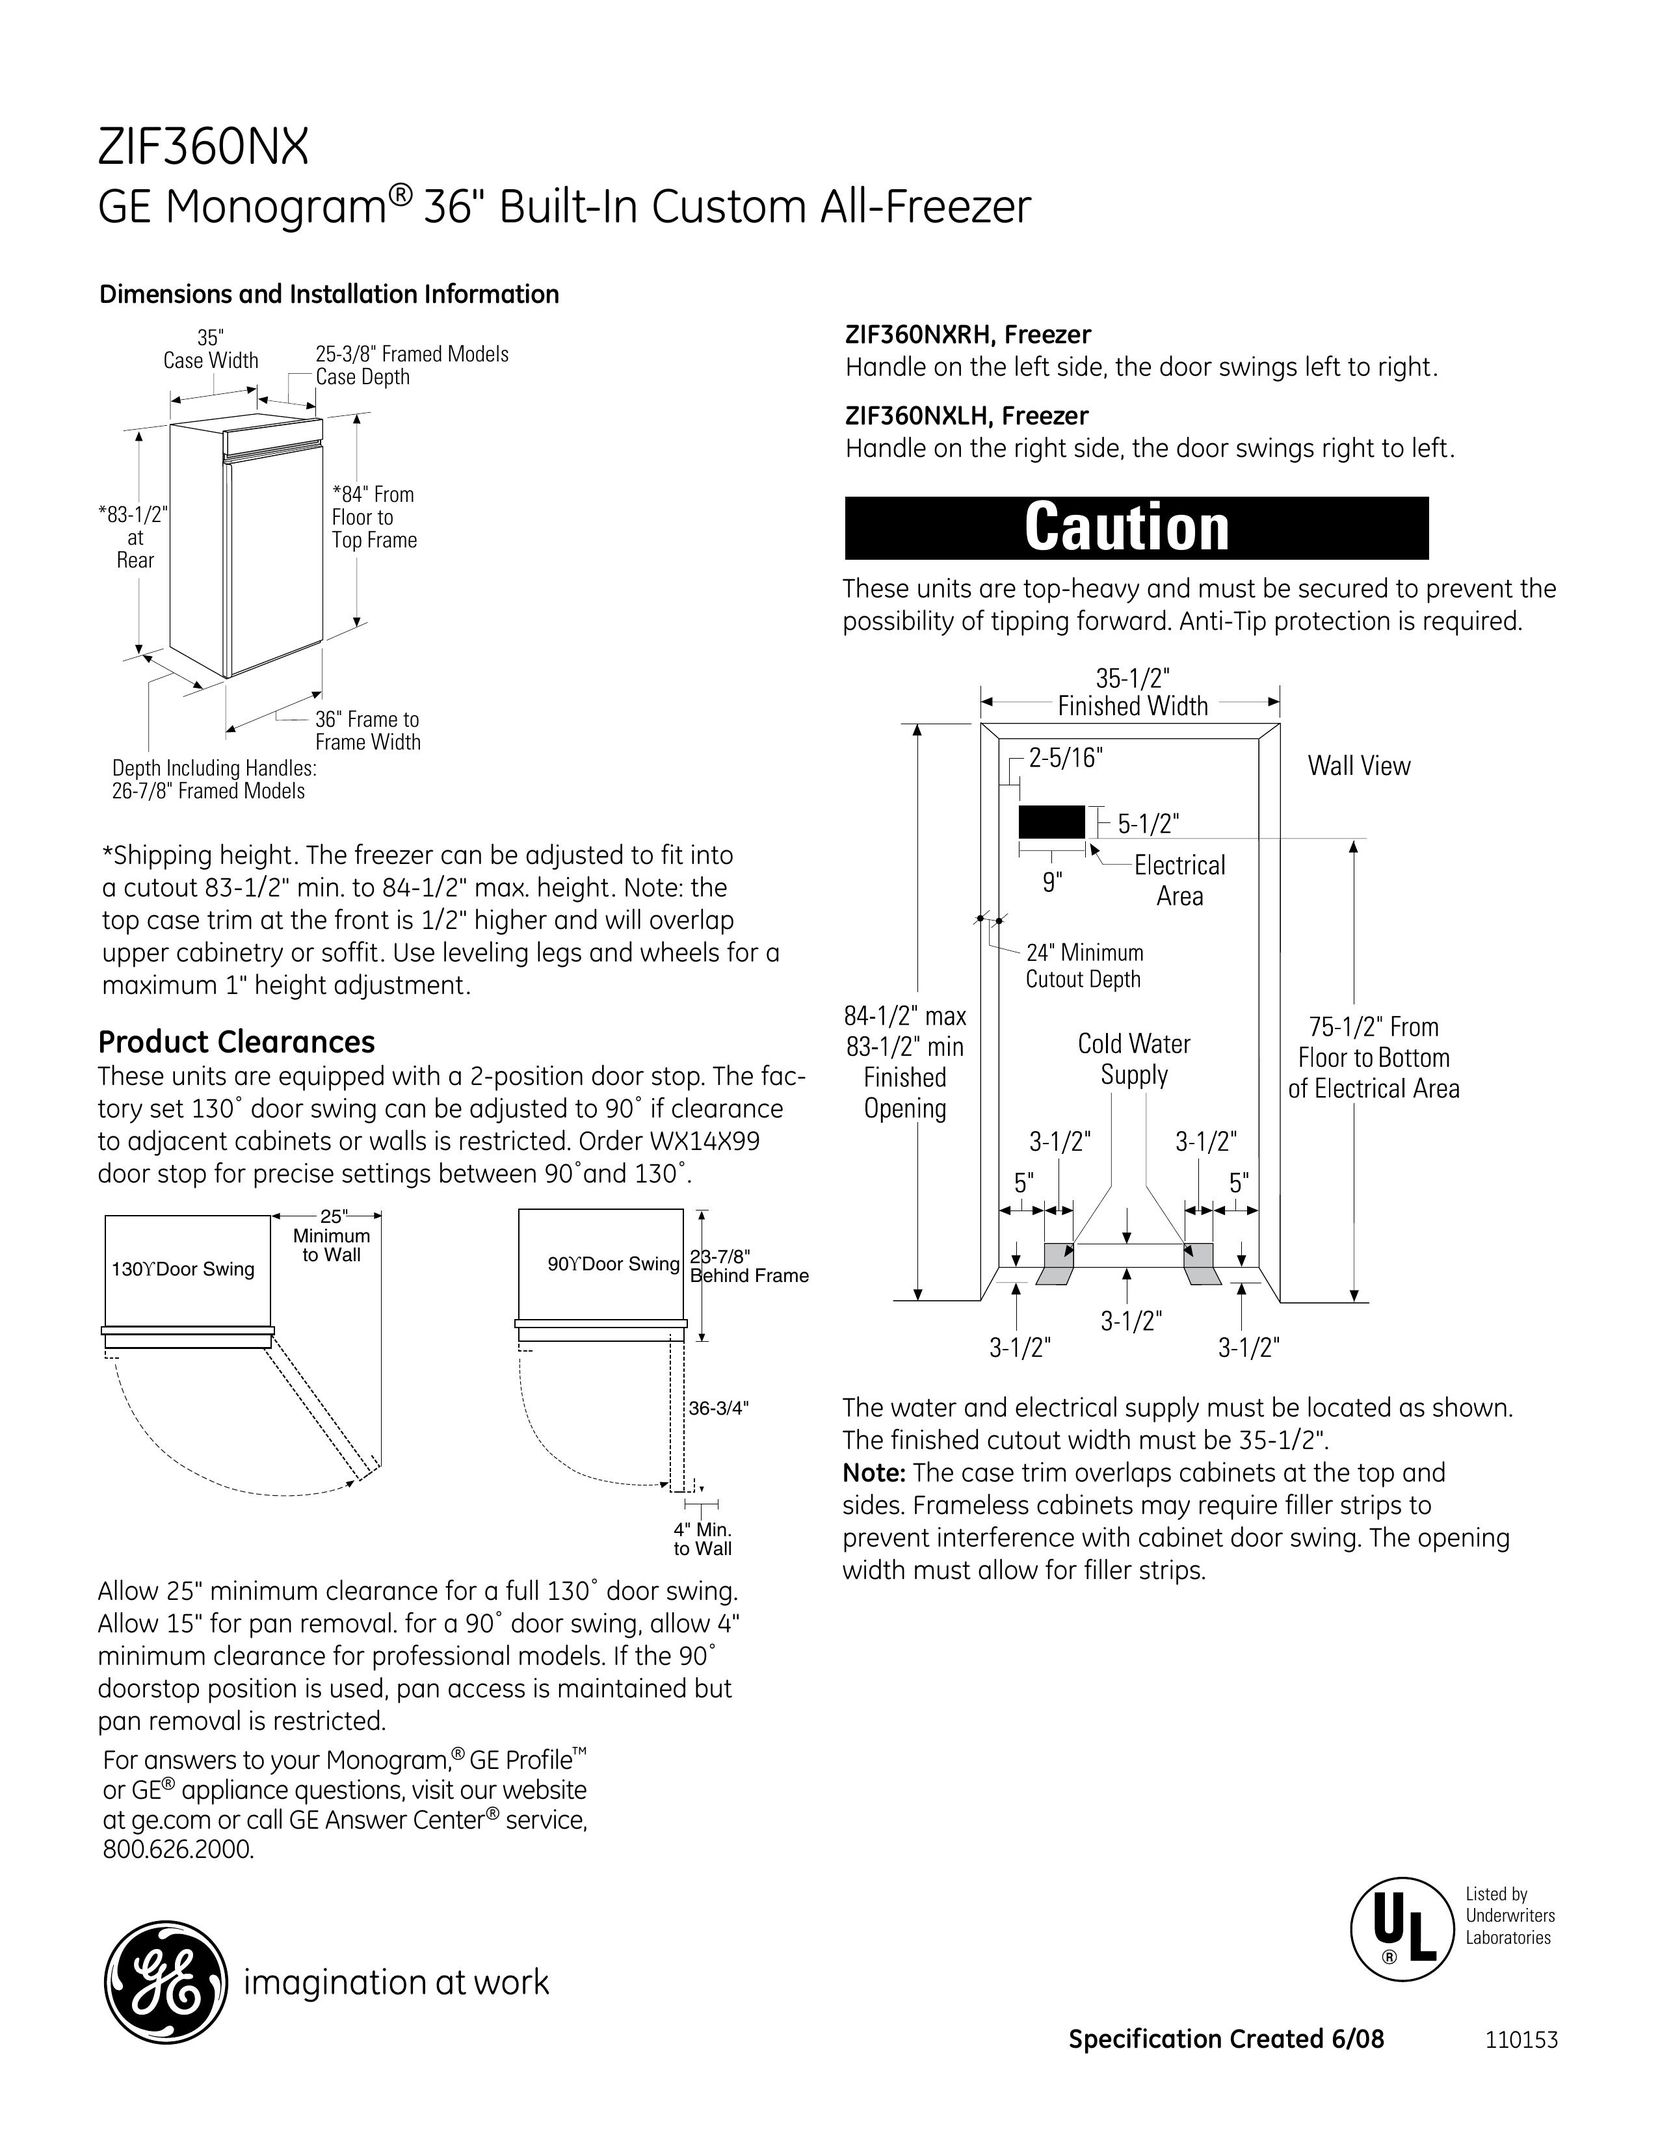 GE Monogram ZIF360NXLH Freezer User Manual